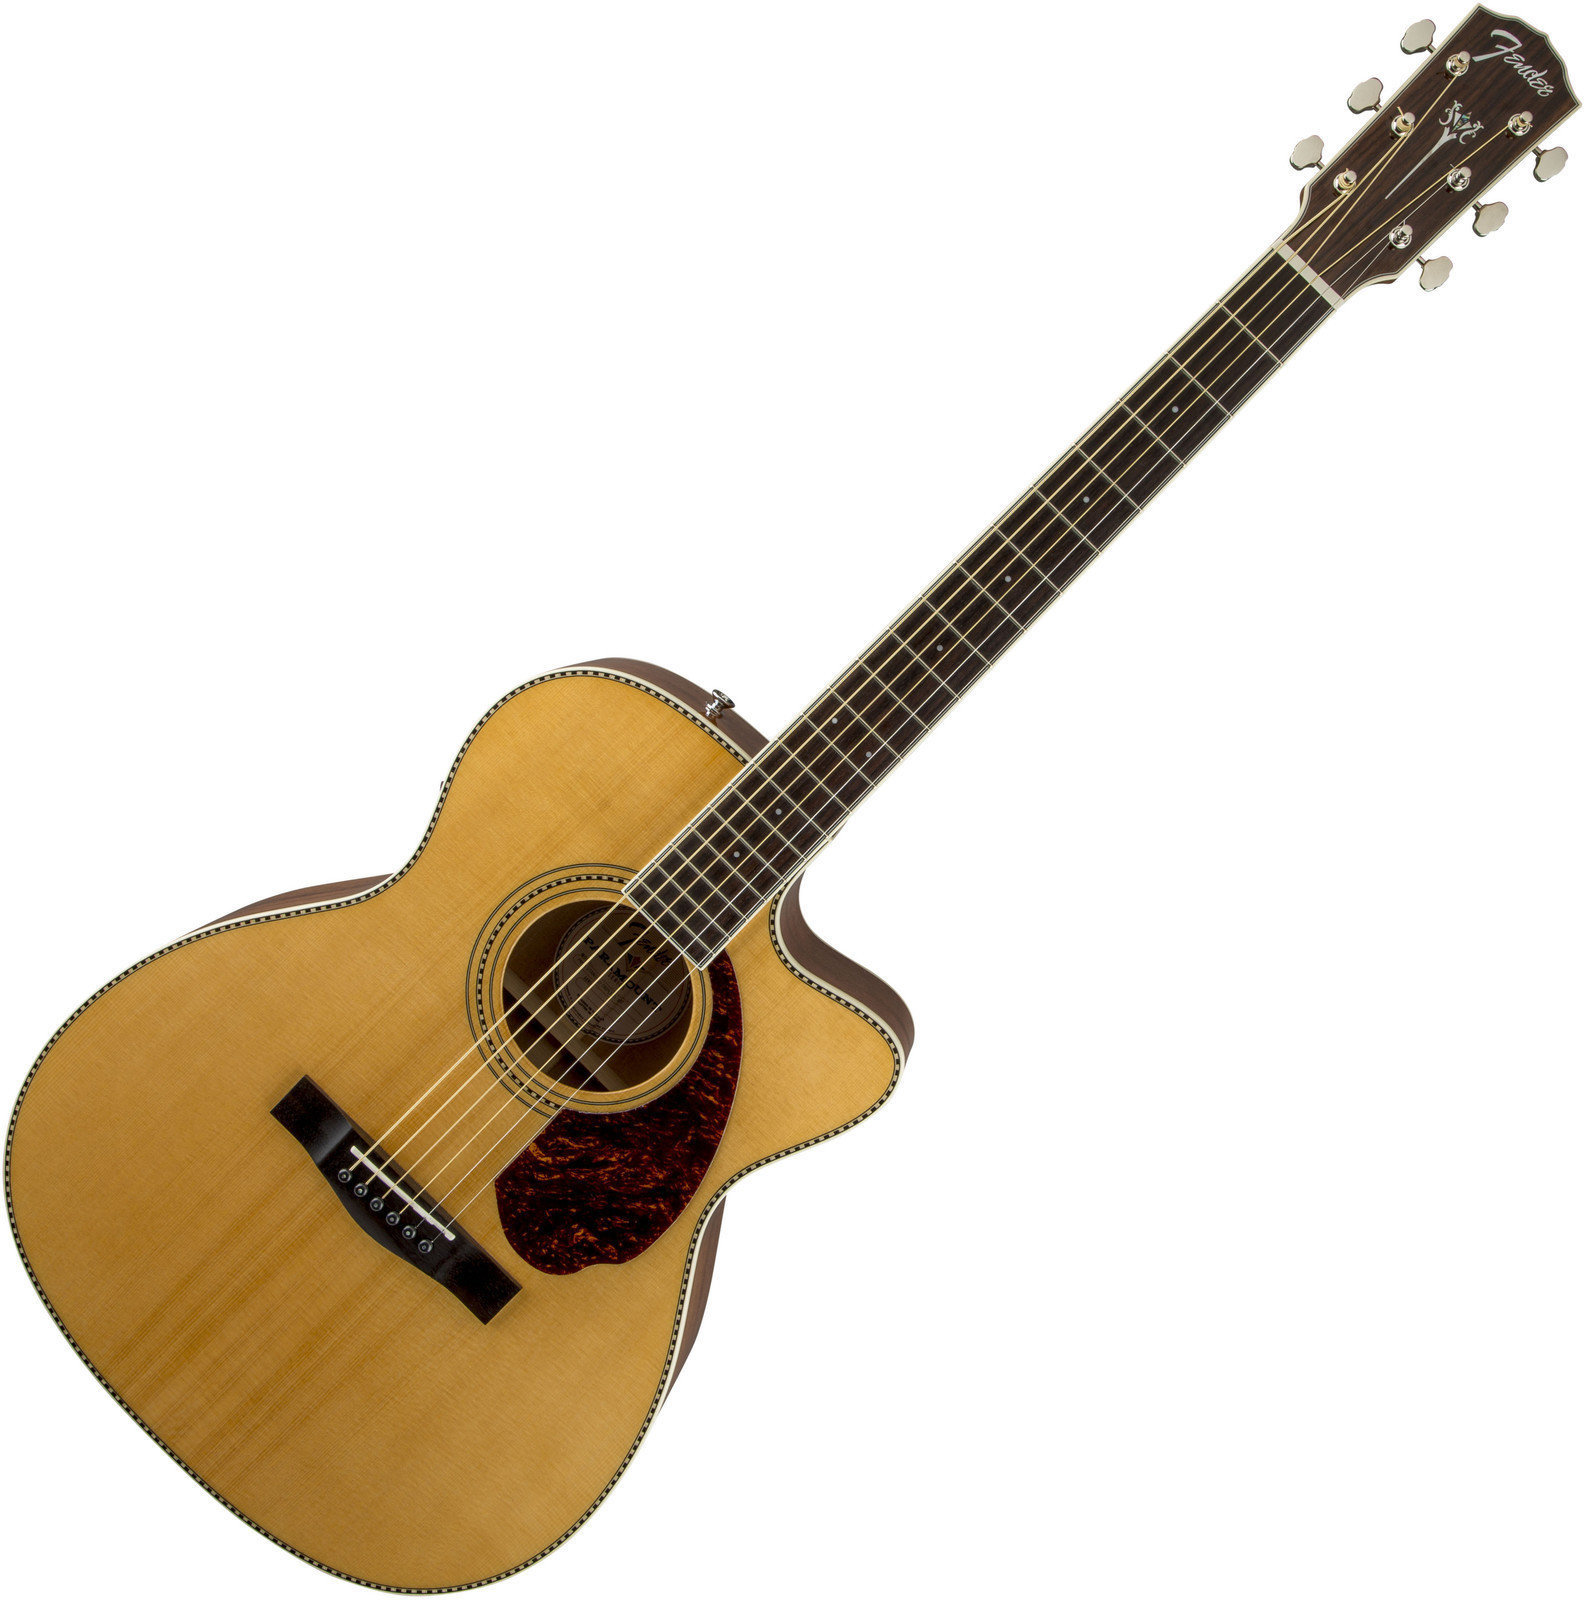 Elektroakustisk gitarr Fender PM-3 Standard Triple 0, Natural